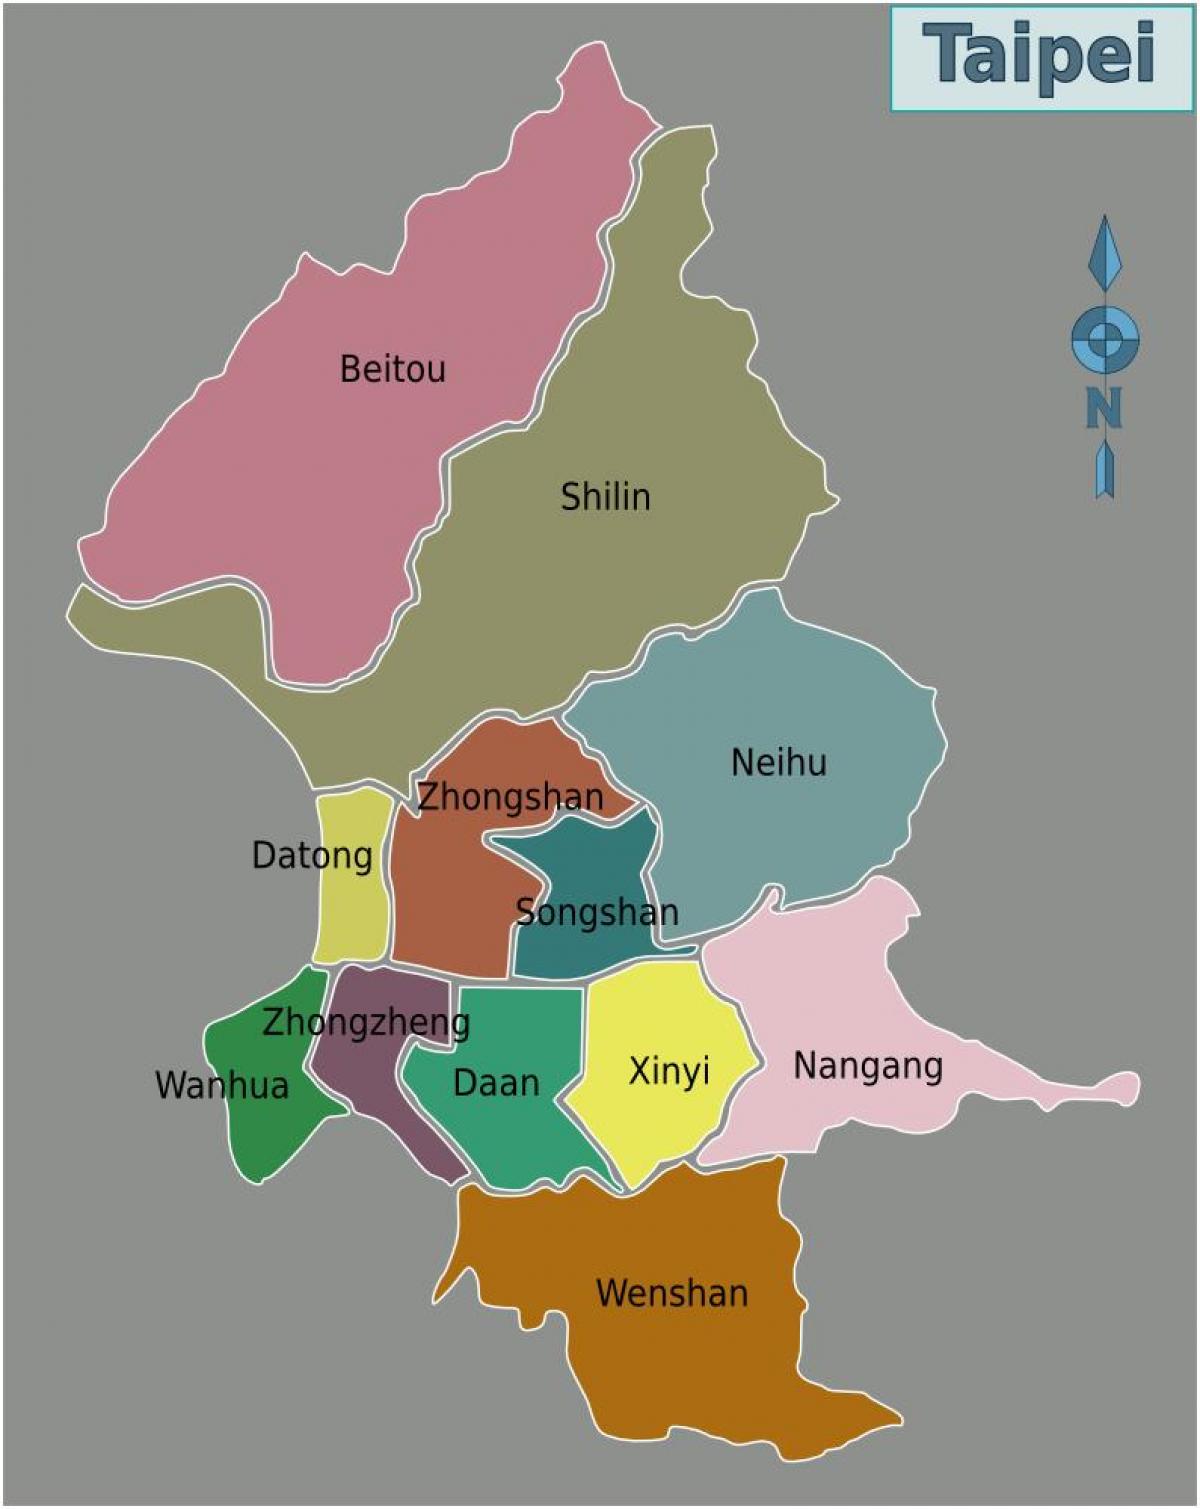 તાઇપેઈ શહેર જિલ્લા નકશો